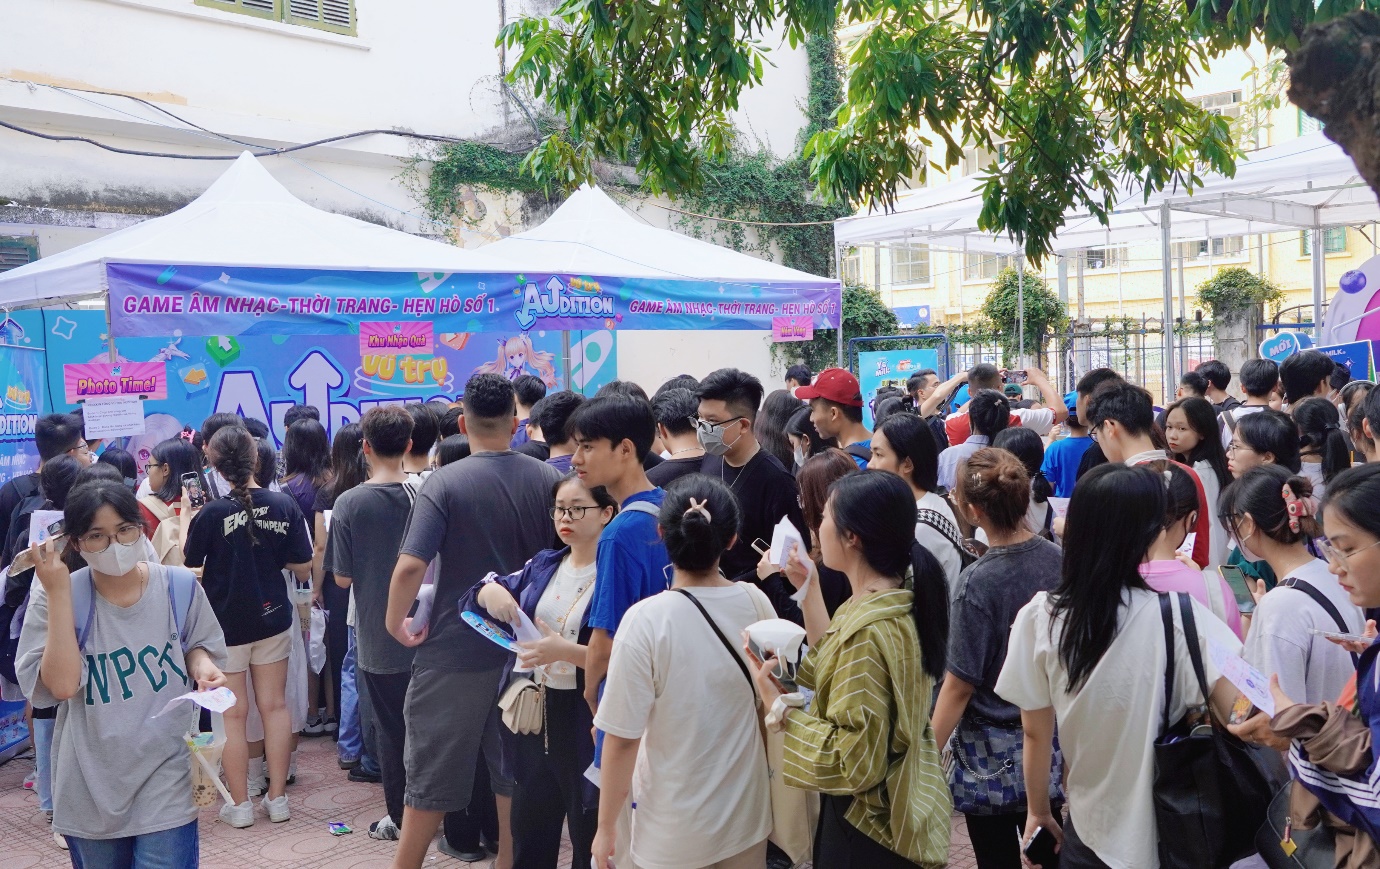 Vũ trụ game Audition tiếp đón 20.000 sinh viên tại NEU Youth Fest - Đại học Kinh tế Quốc dân - Ảnh 2.